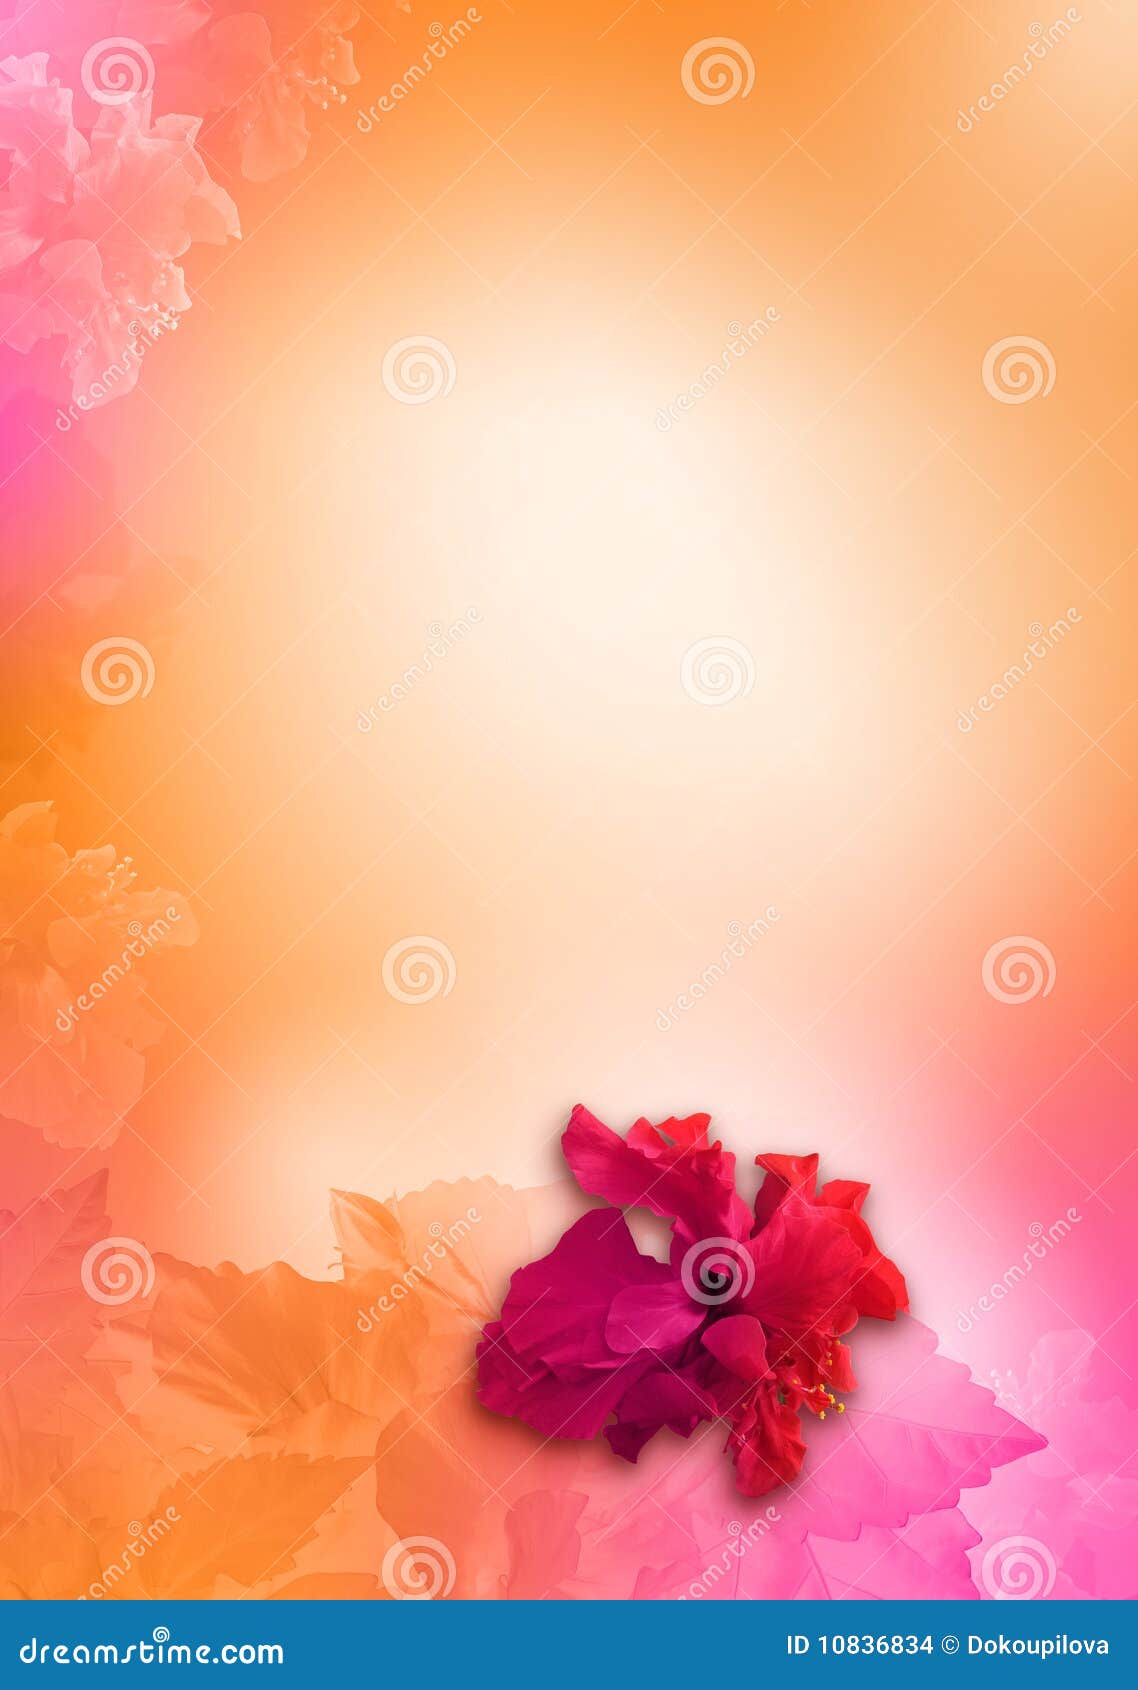 Với màu sắc tươi sáng và hương thơm ngào ngạt, hoa cam quýt hồng là loại hoa không thể thiếu trong bất cứ buổi hội họa nào. Chiêm ngưỡng hình ảnh sẽ giúp bạn cảm nhận được sự tuyệt vời của loài hoa này.